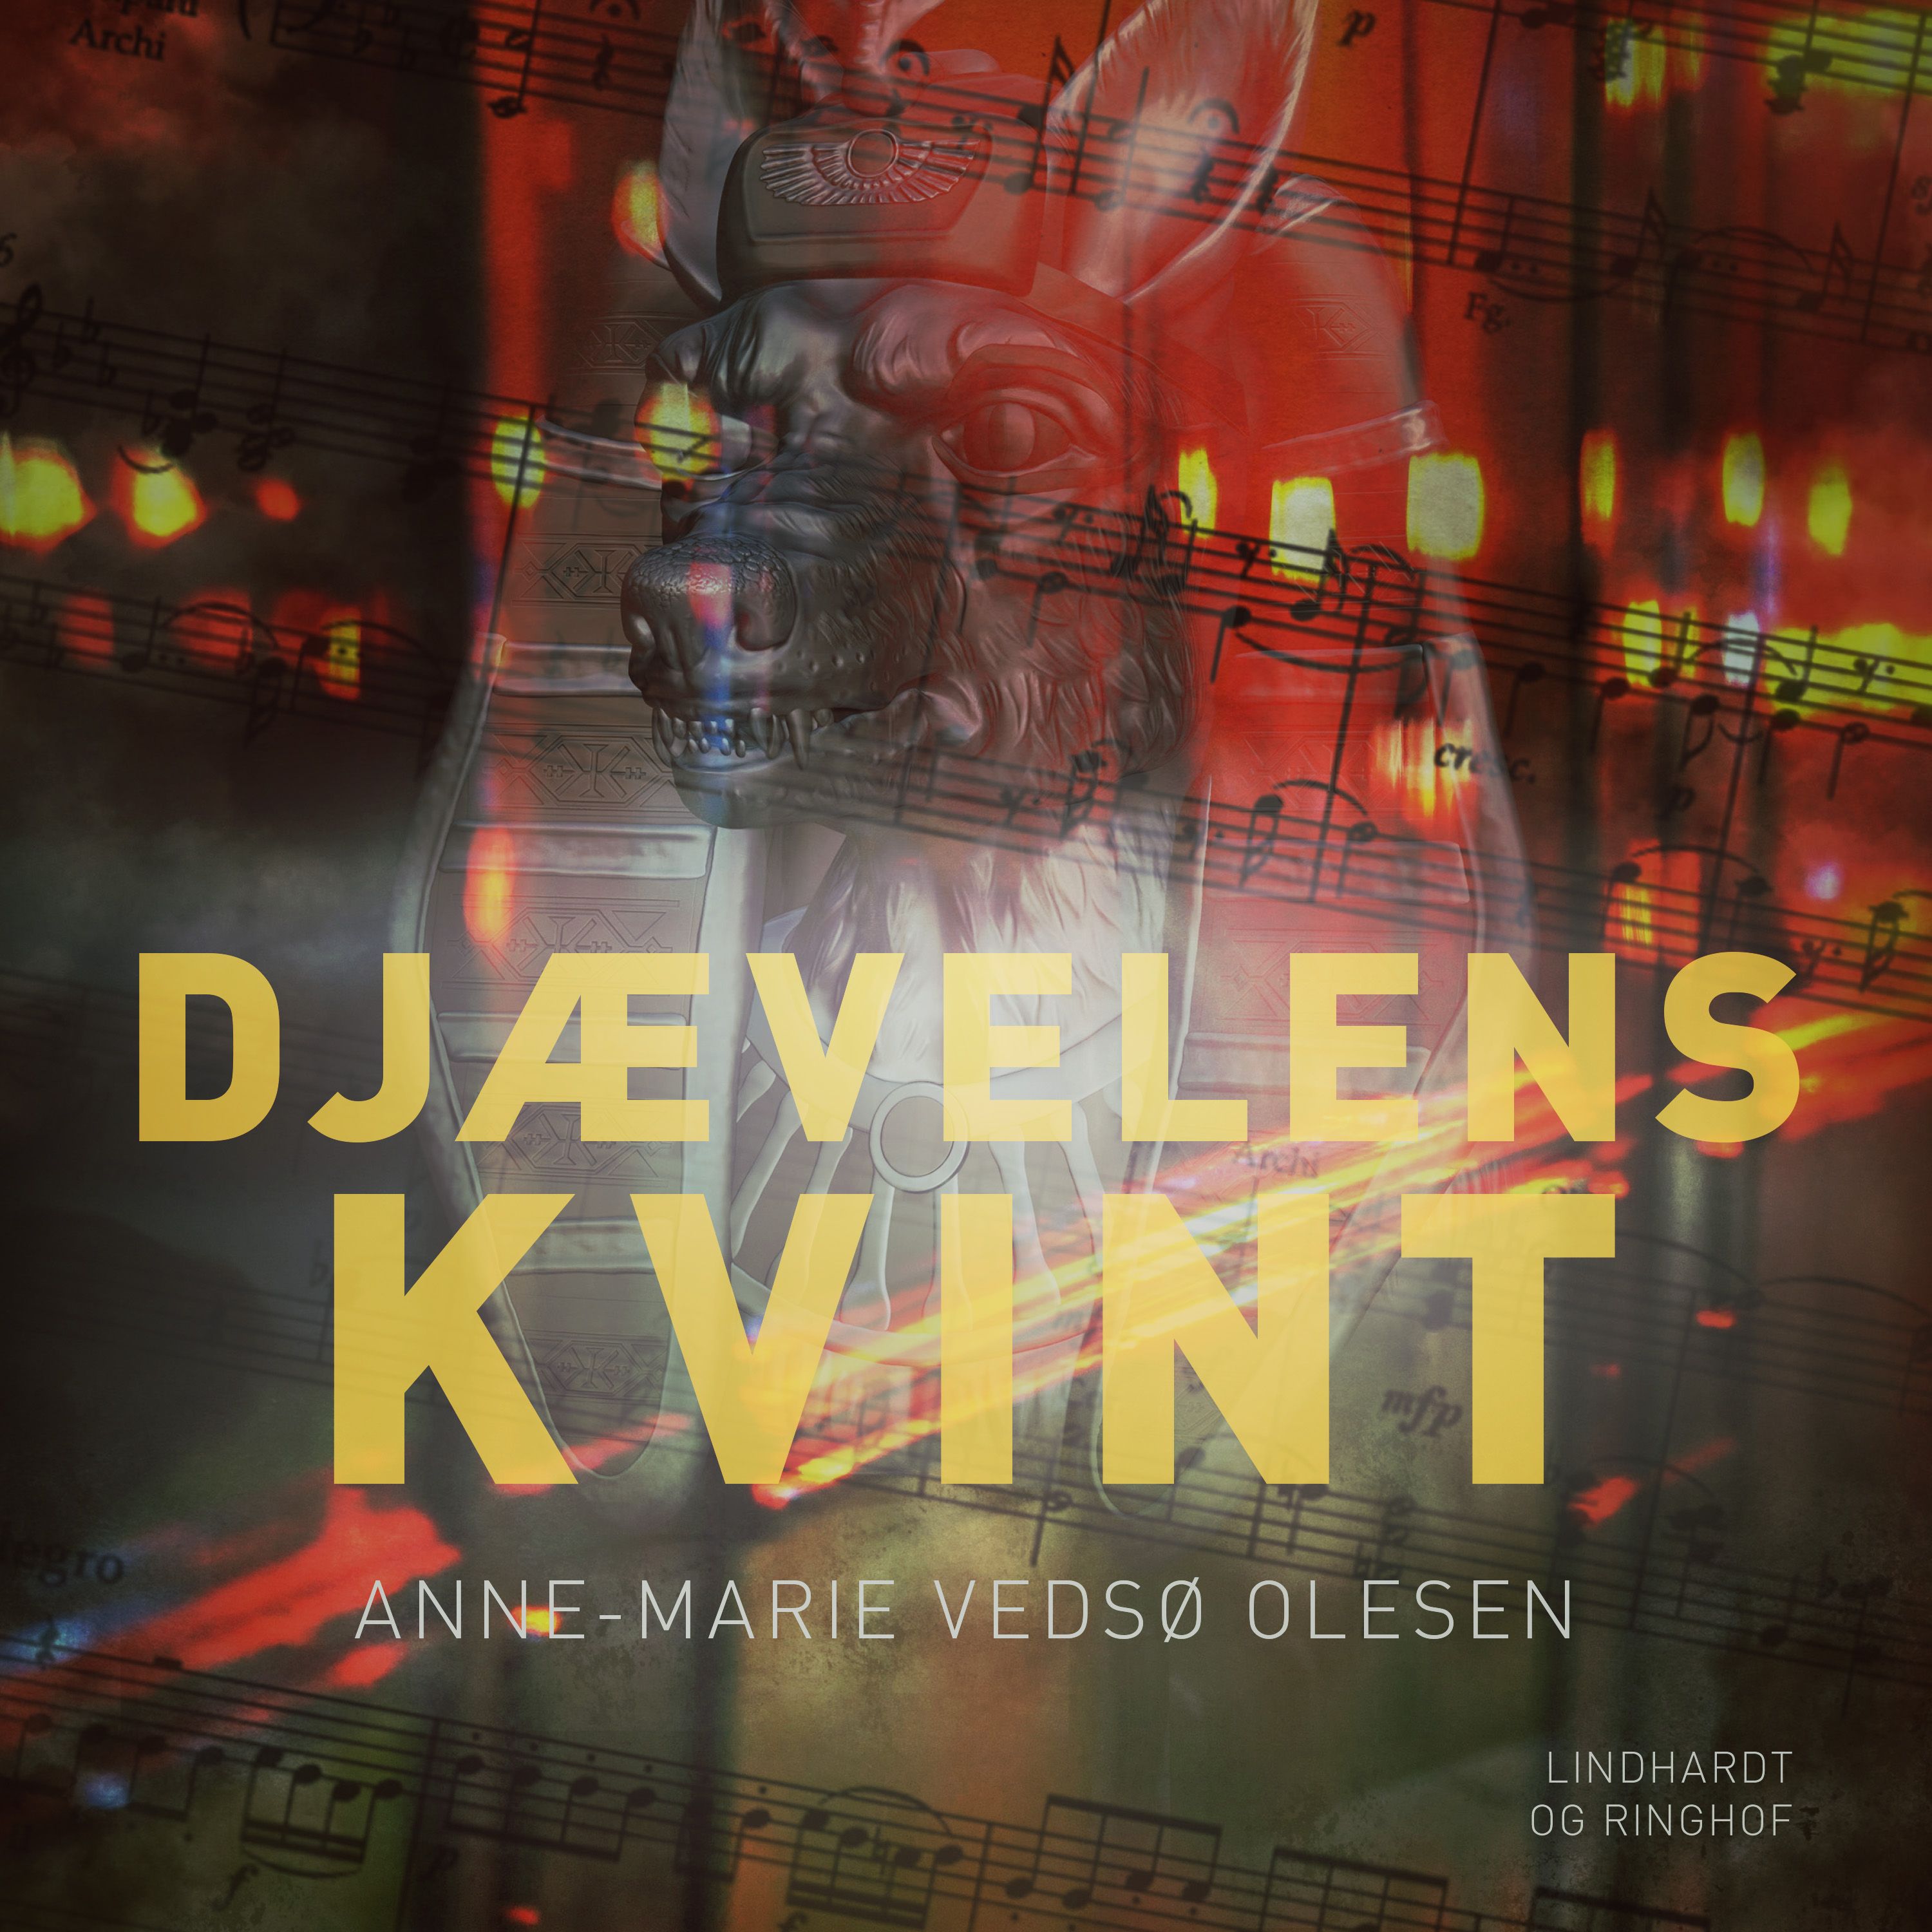 Djævelens kvint, ljudbok av Anne-Marie Vedsø Olesen